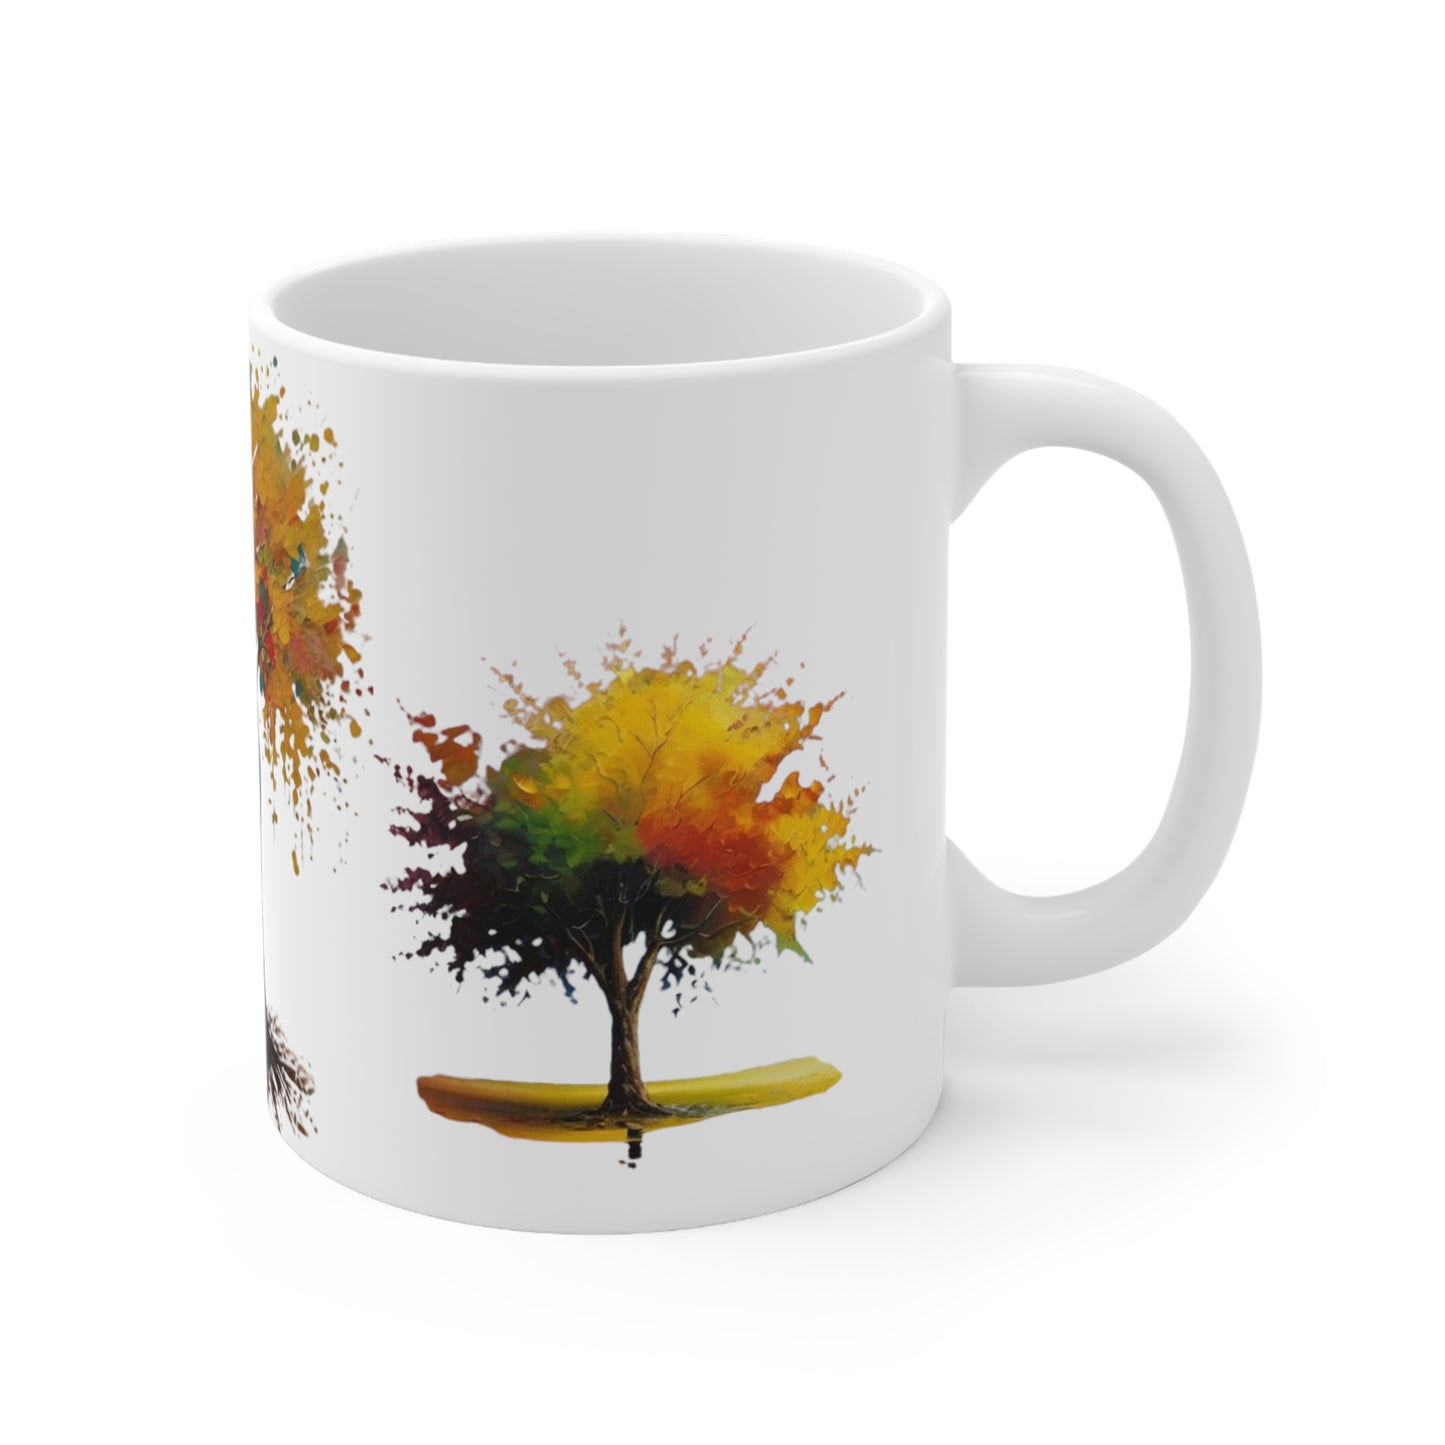 Painted Yellow Trees Art Mug - Ceramic Coffee Mug 11oz